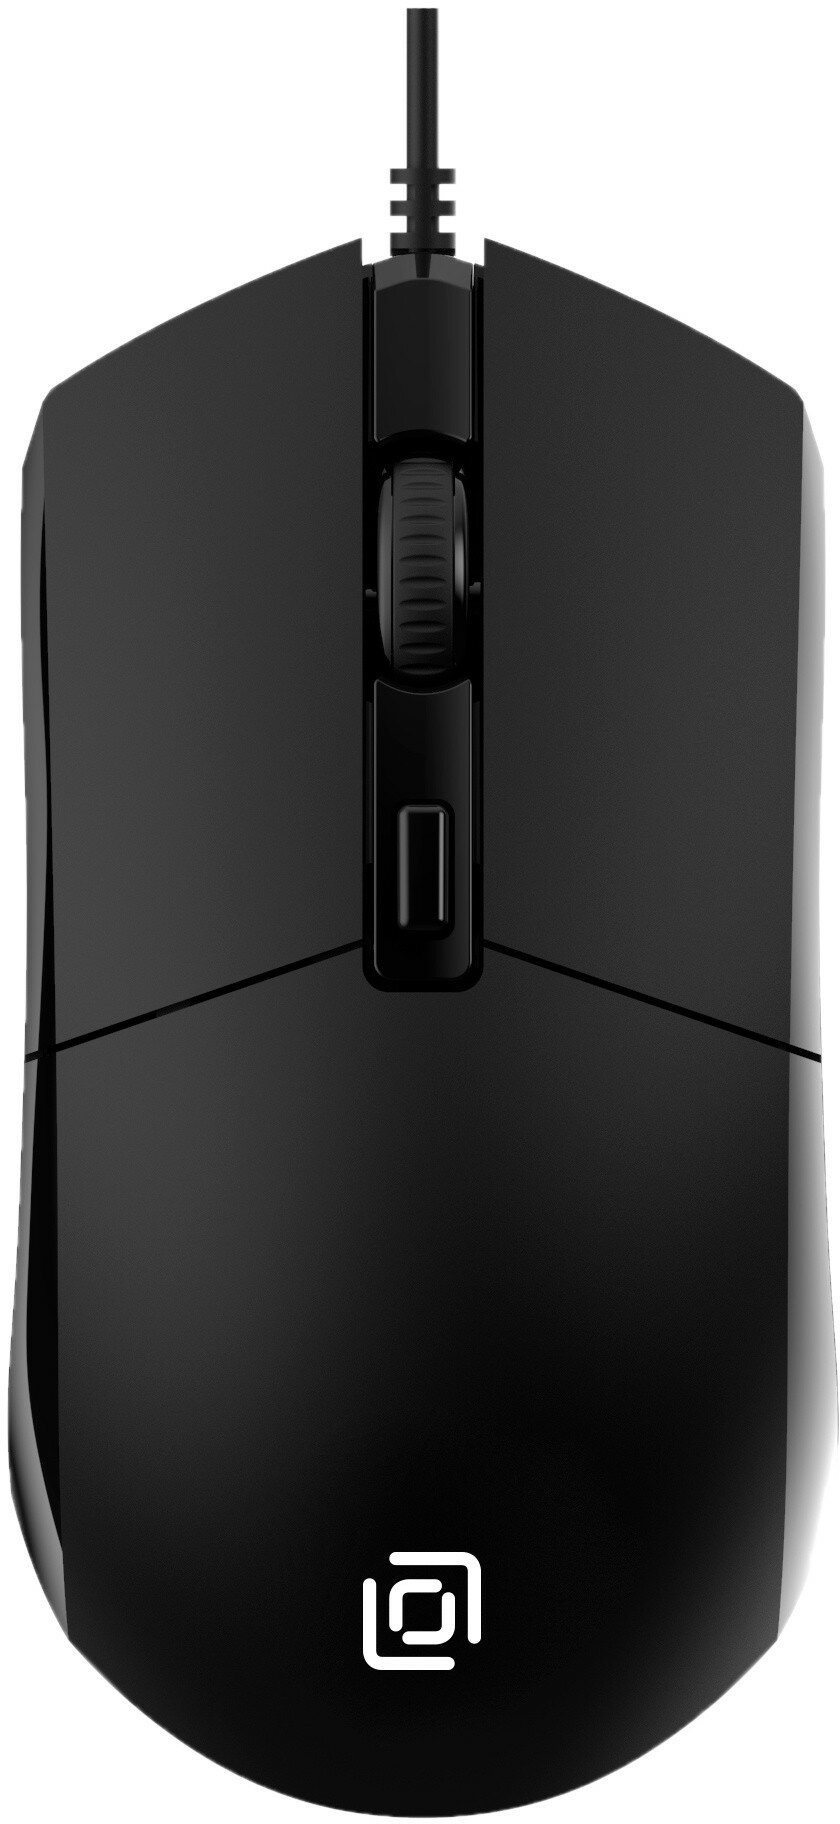 Мышь Oklick 207M Black оптическая, проводная, 2400 dpi, USB, цвет: чёрный